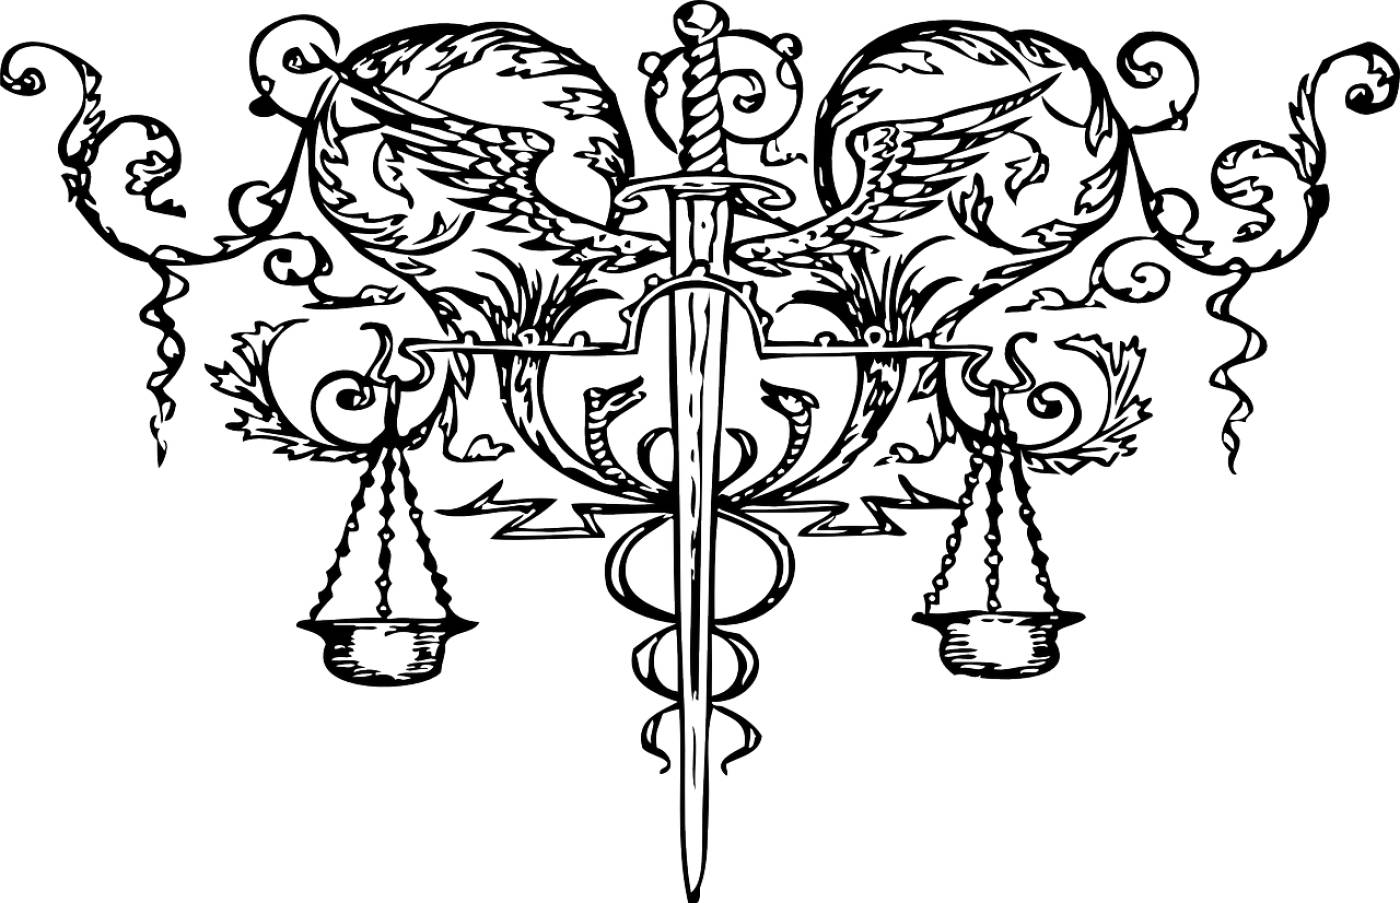 scales sword justice law  svg vector